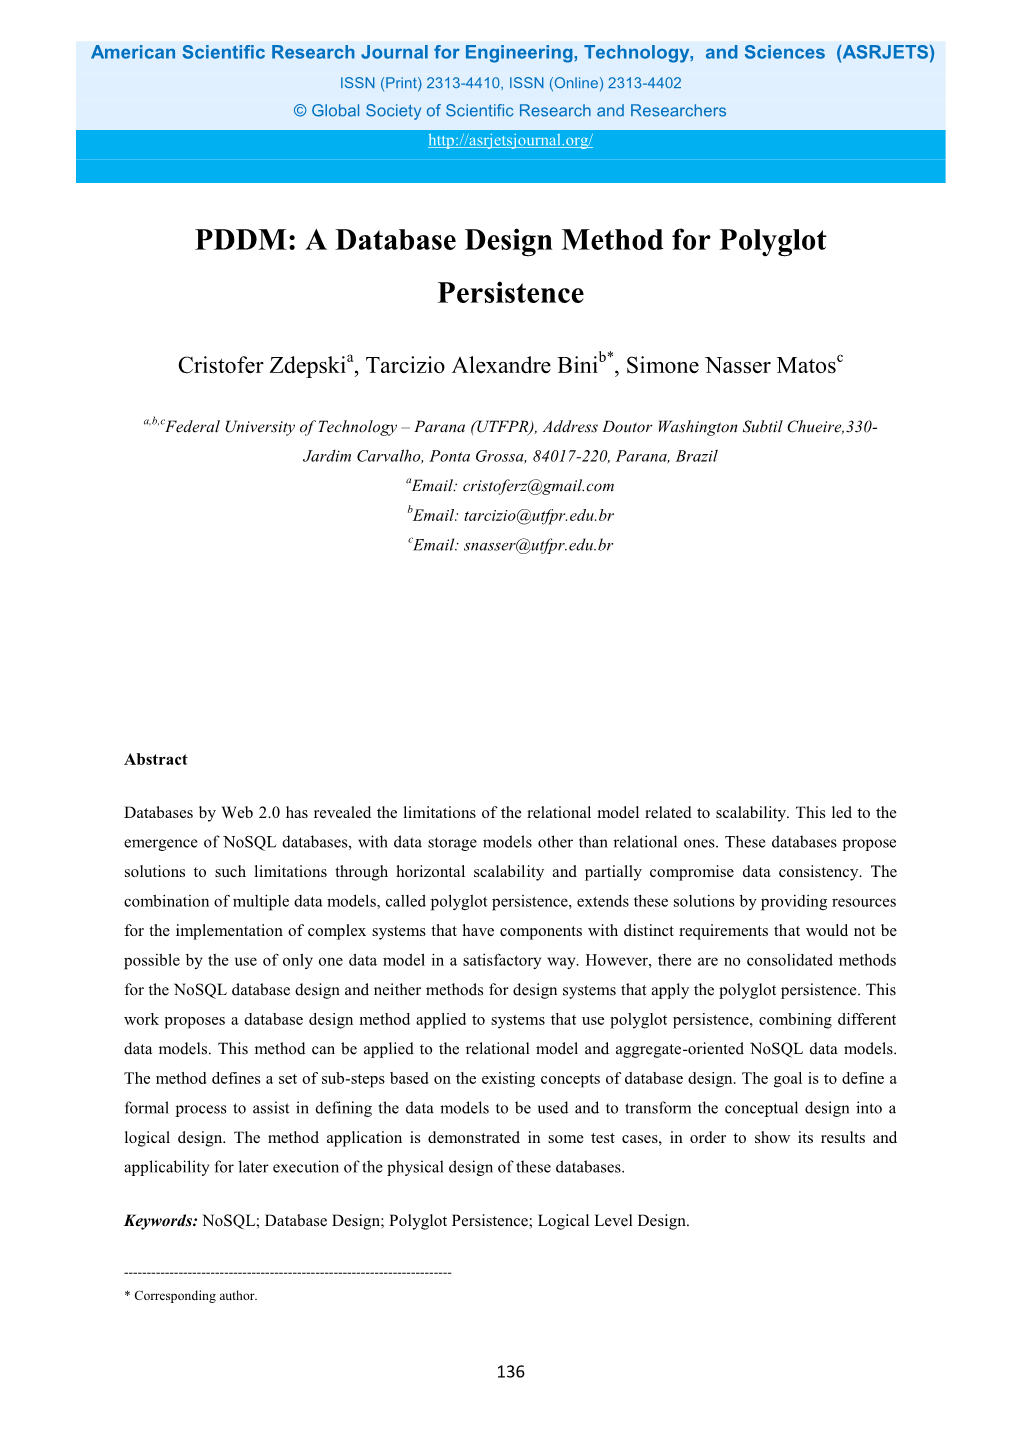 PDDM: a Database Design Method for Polyglot Persistence